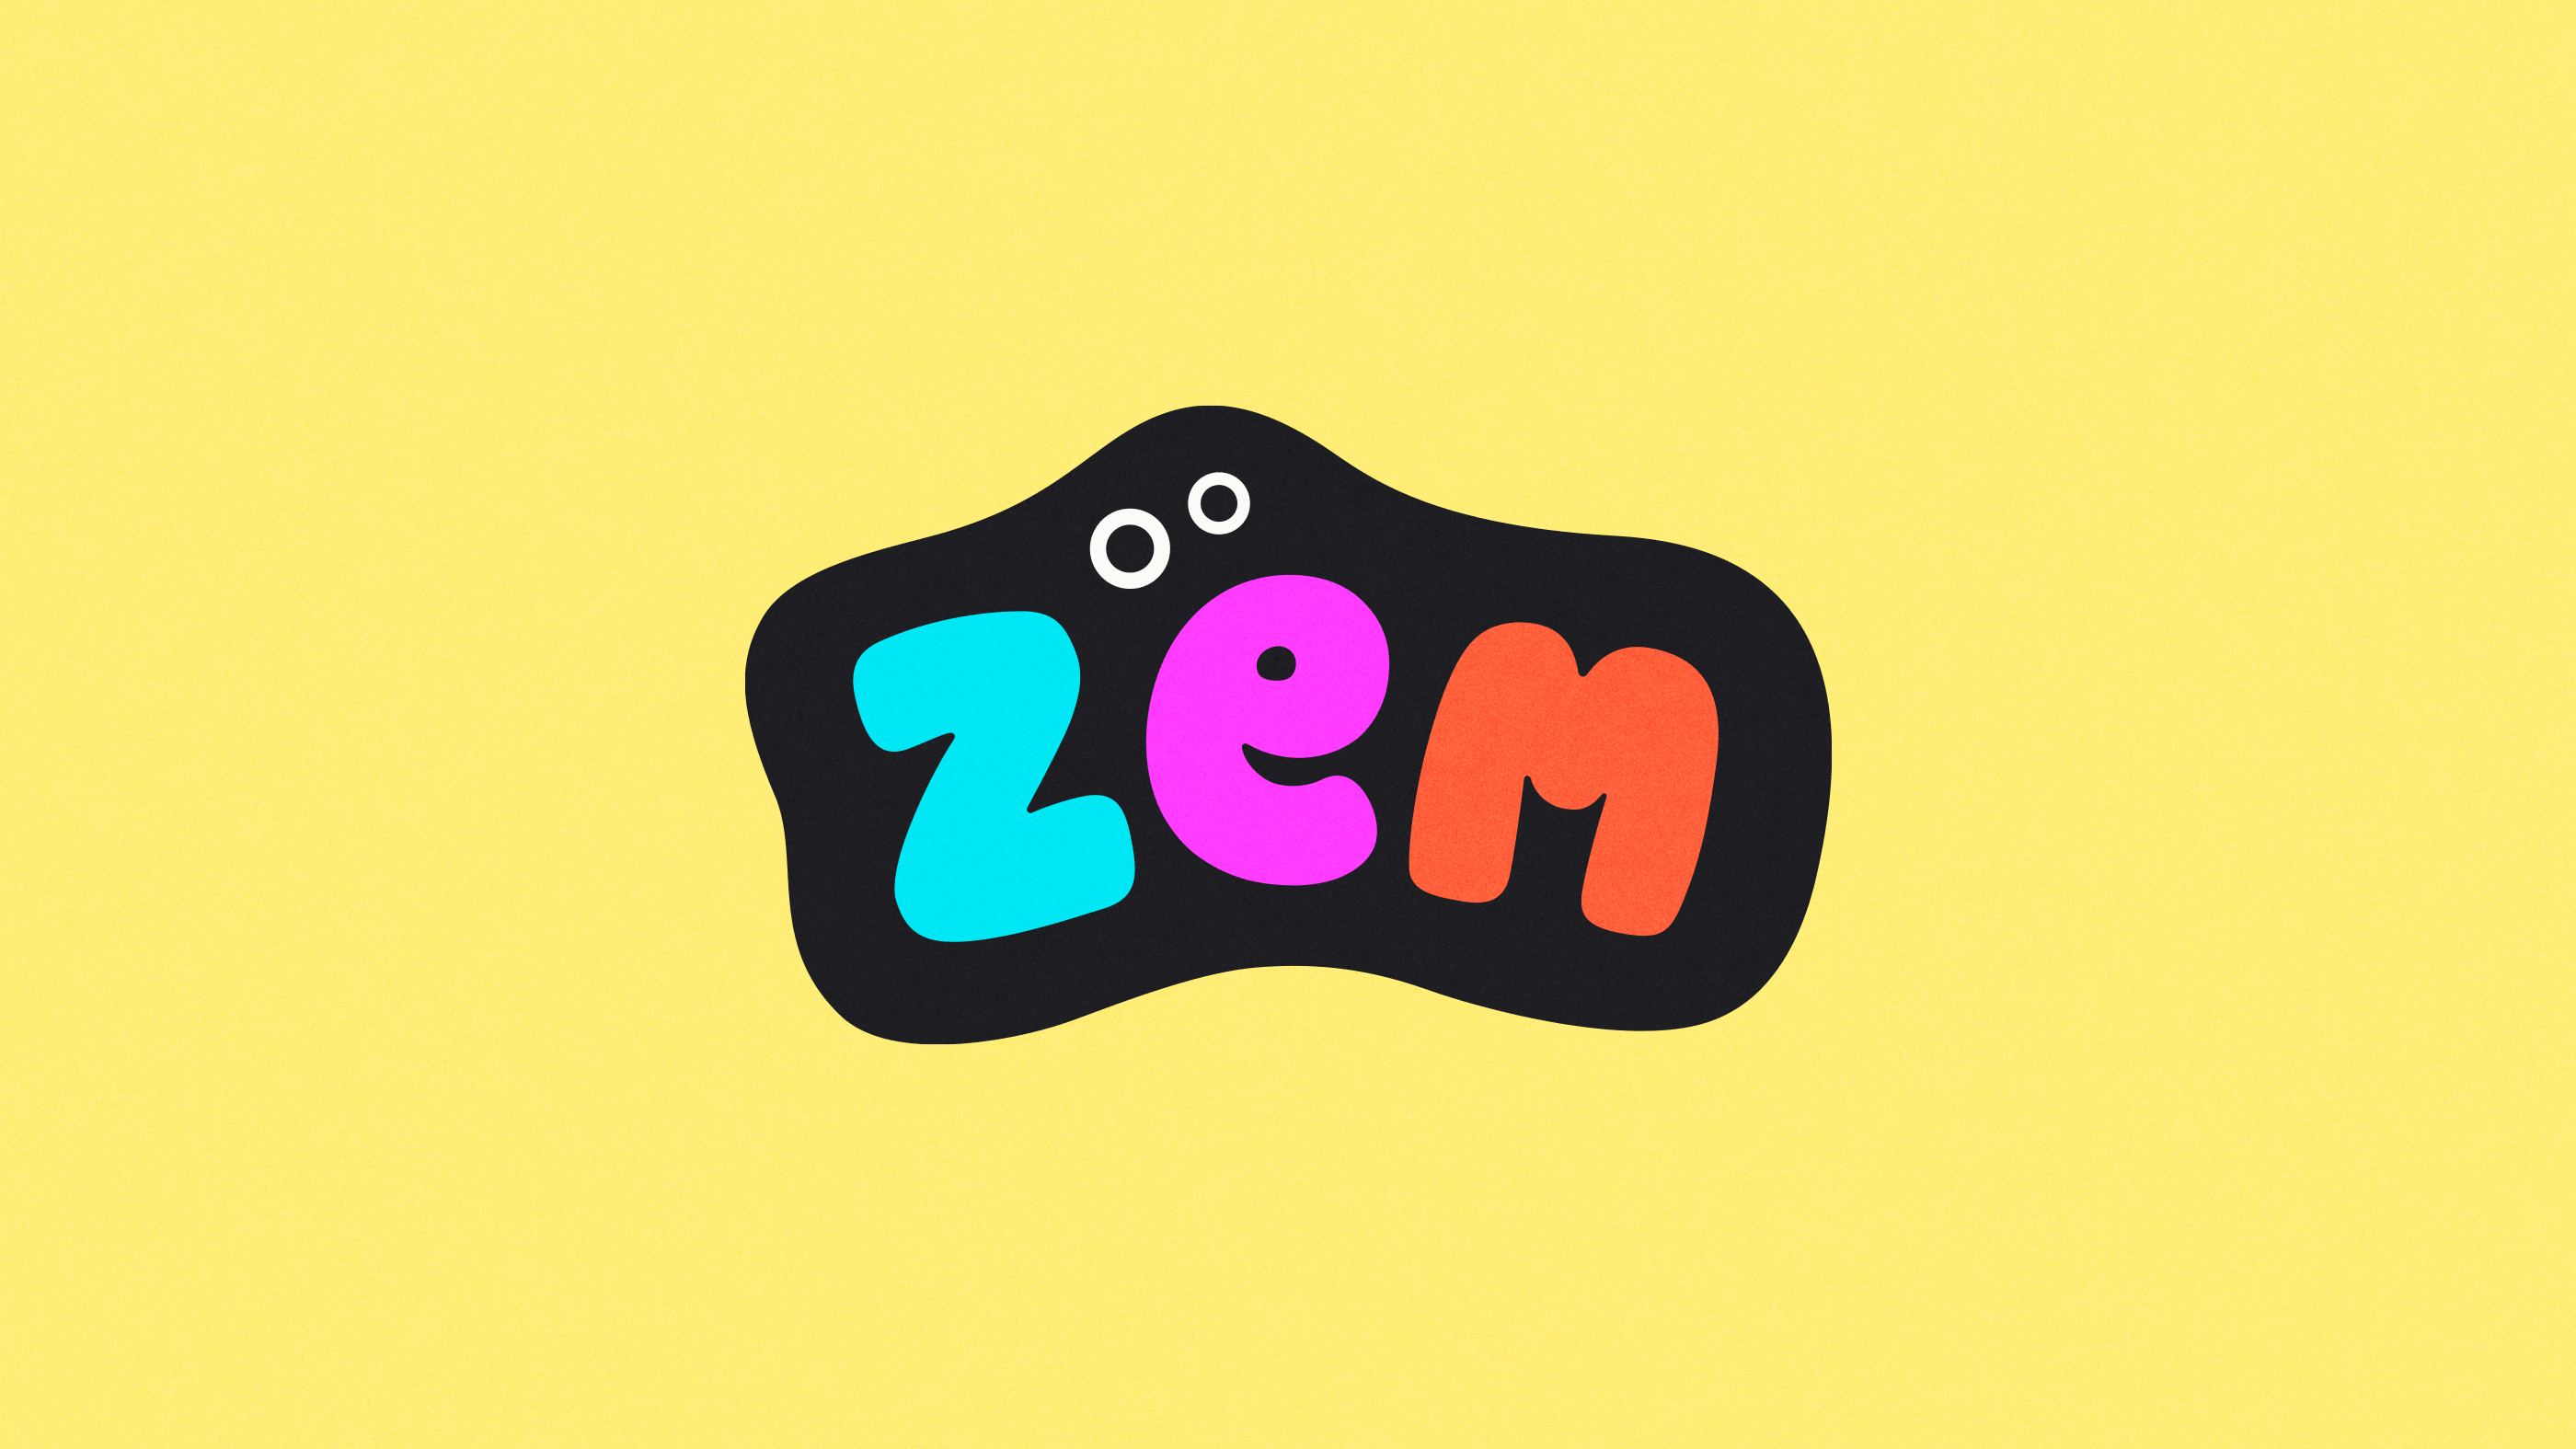 ZEM Brand Identity